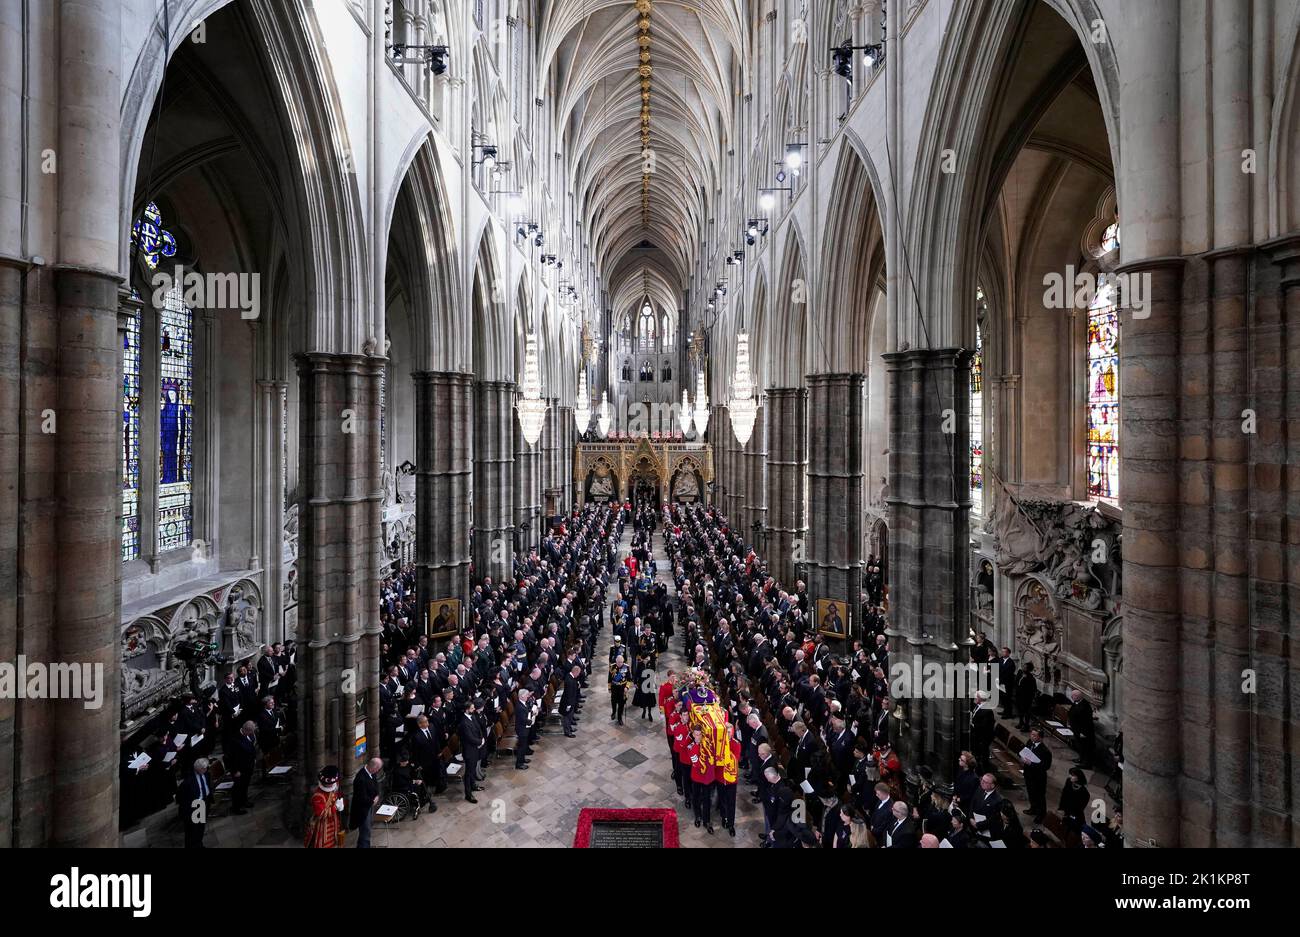 Rey Carlos III, la Reina Consort, la Princesa Real, el Vicealmirante Sir Tim Laurence, el Duque de York, el Conde de Wessex, la Condesa de Wessex, el Príncipe de Gales, la Princesa de Gales, el Príncipe Jorge, la Princesa Charlotte, el Duque de Sussex, la Duquesa de Sussex, Peter Phillips y el Conde de Snowdon siguen detrás del ataúd de la Reina Isabel II, cubierto en el Estándar Real con la Corona Imperial del Estado y el orbe y cetro del Soberano, como se lleva a cabo en la Abadía de Westminster después de su Funeral del Estado. Fecha de la foto: Lunes 19 de septiembre de 2022. Foto de stock